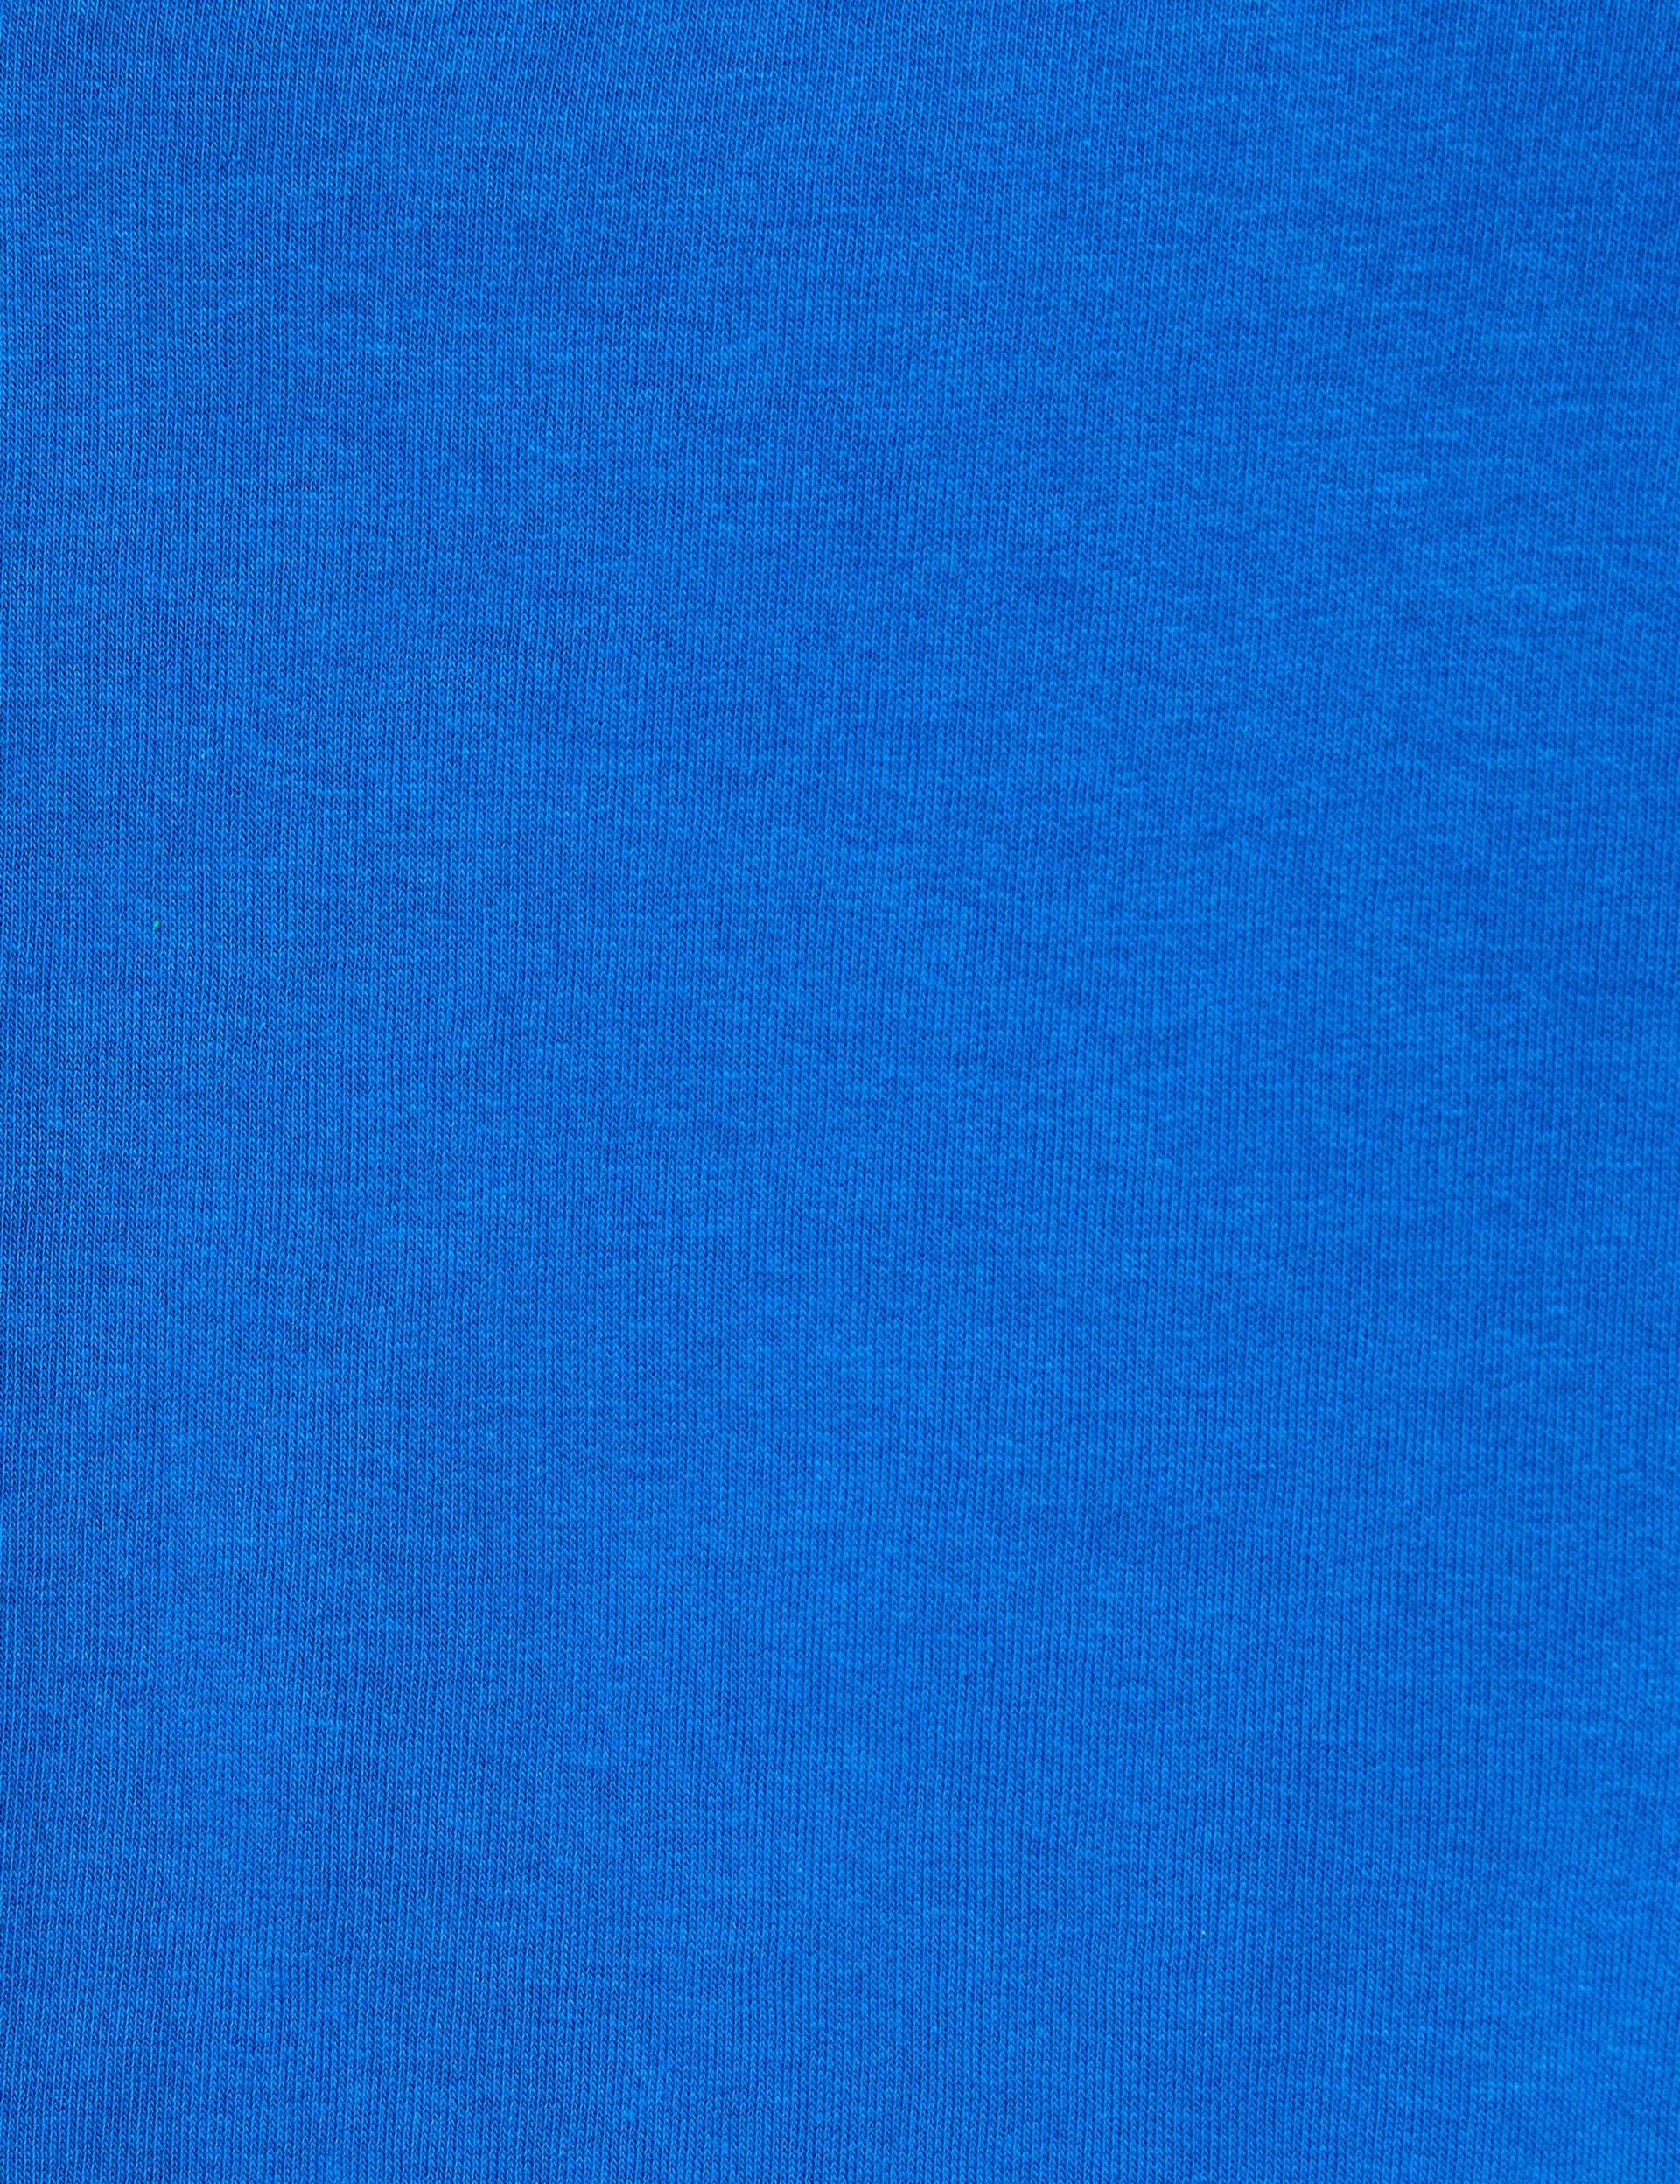 Tee-shirt bleu foncé court et oversize